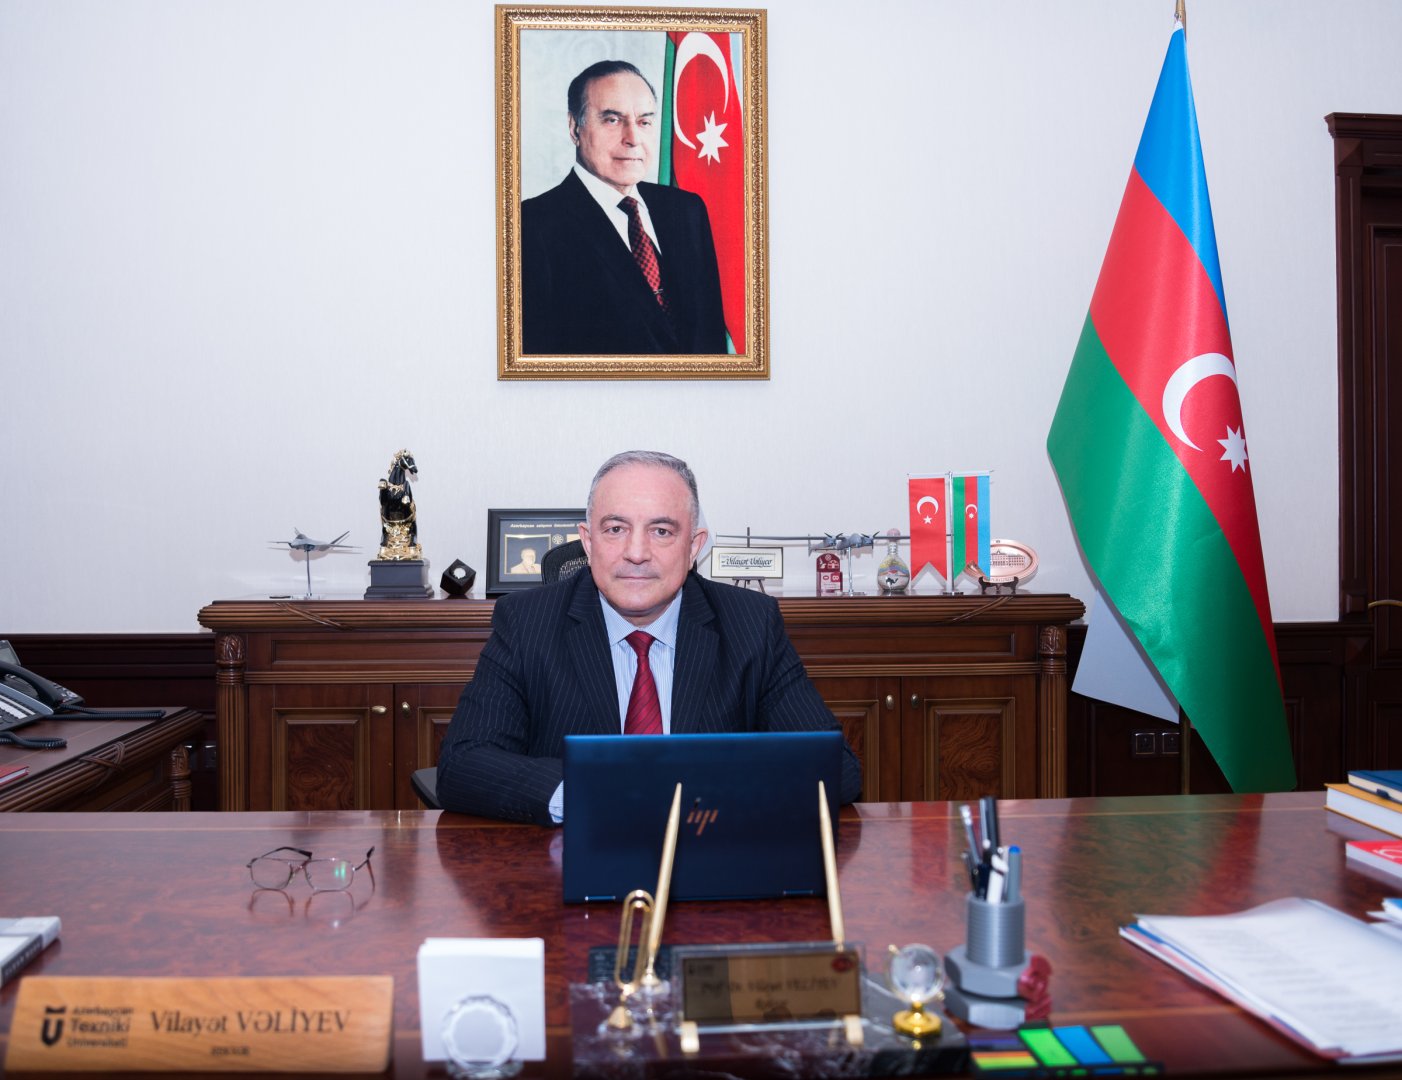 Вилаят Велиев вновь назначен ректором Азербайджанского технического университета - Распоряжение